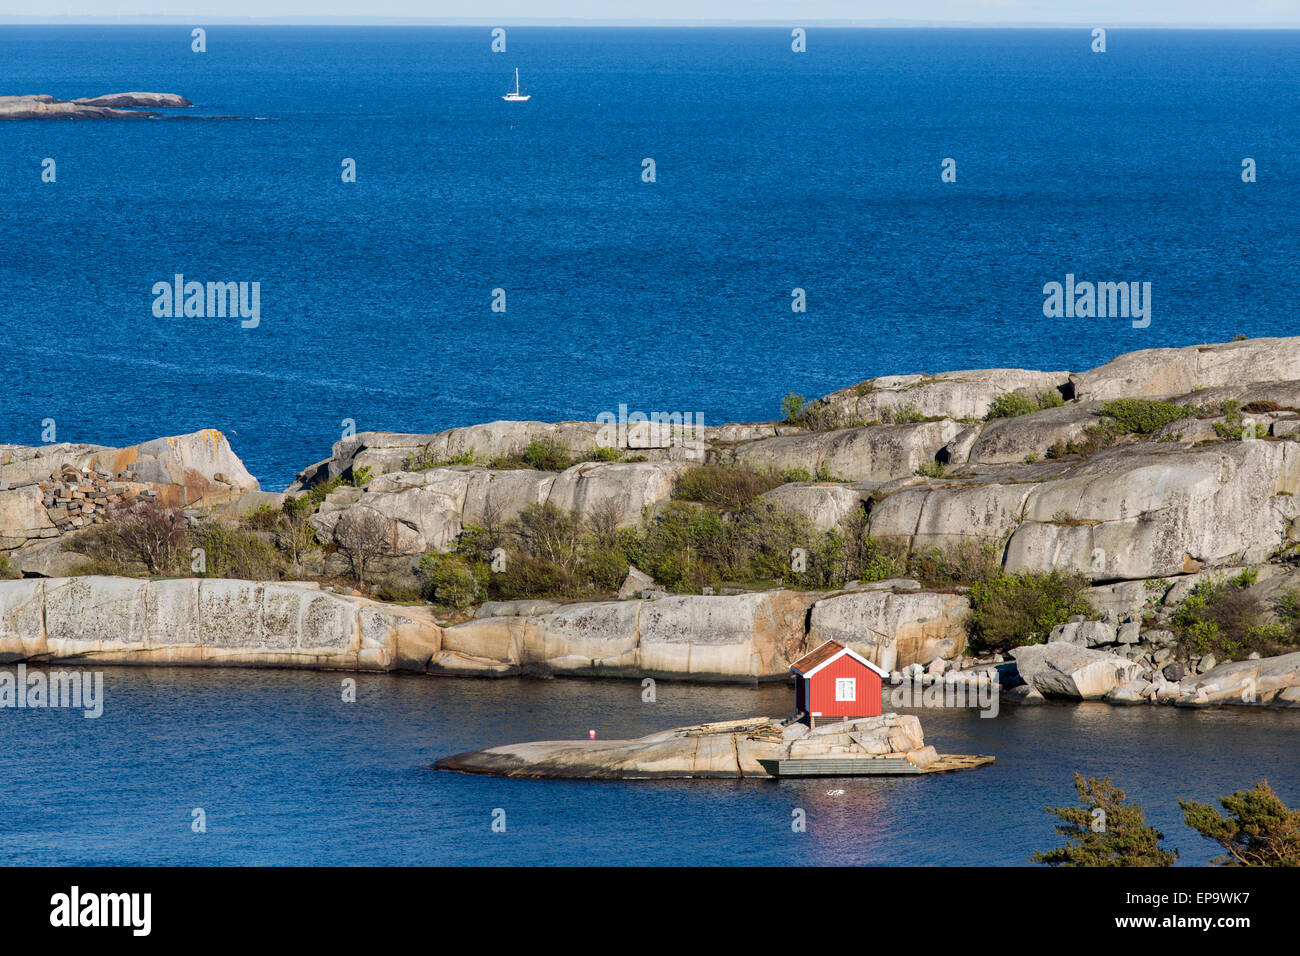 Joli petit rouge sur une petite île avec un bateau à voile dans la distance Banque D'Images